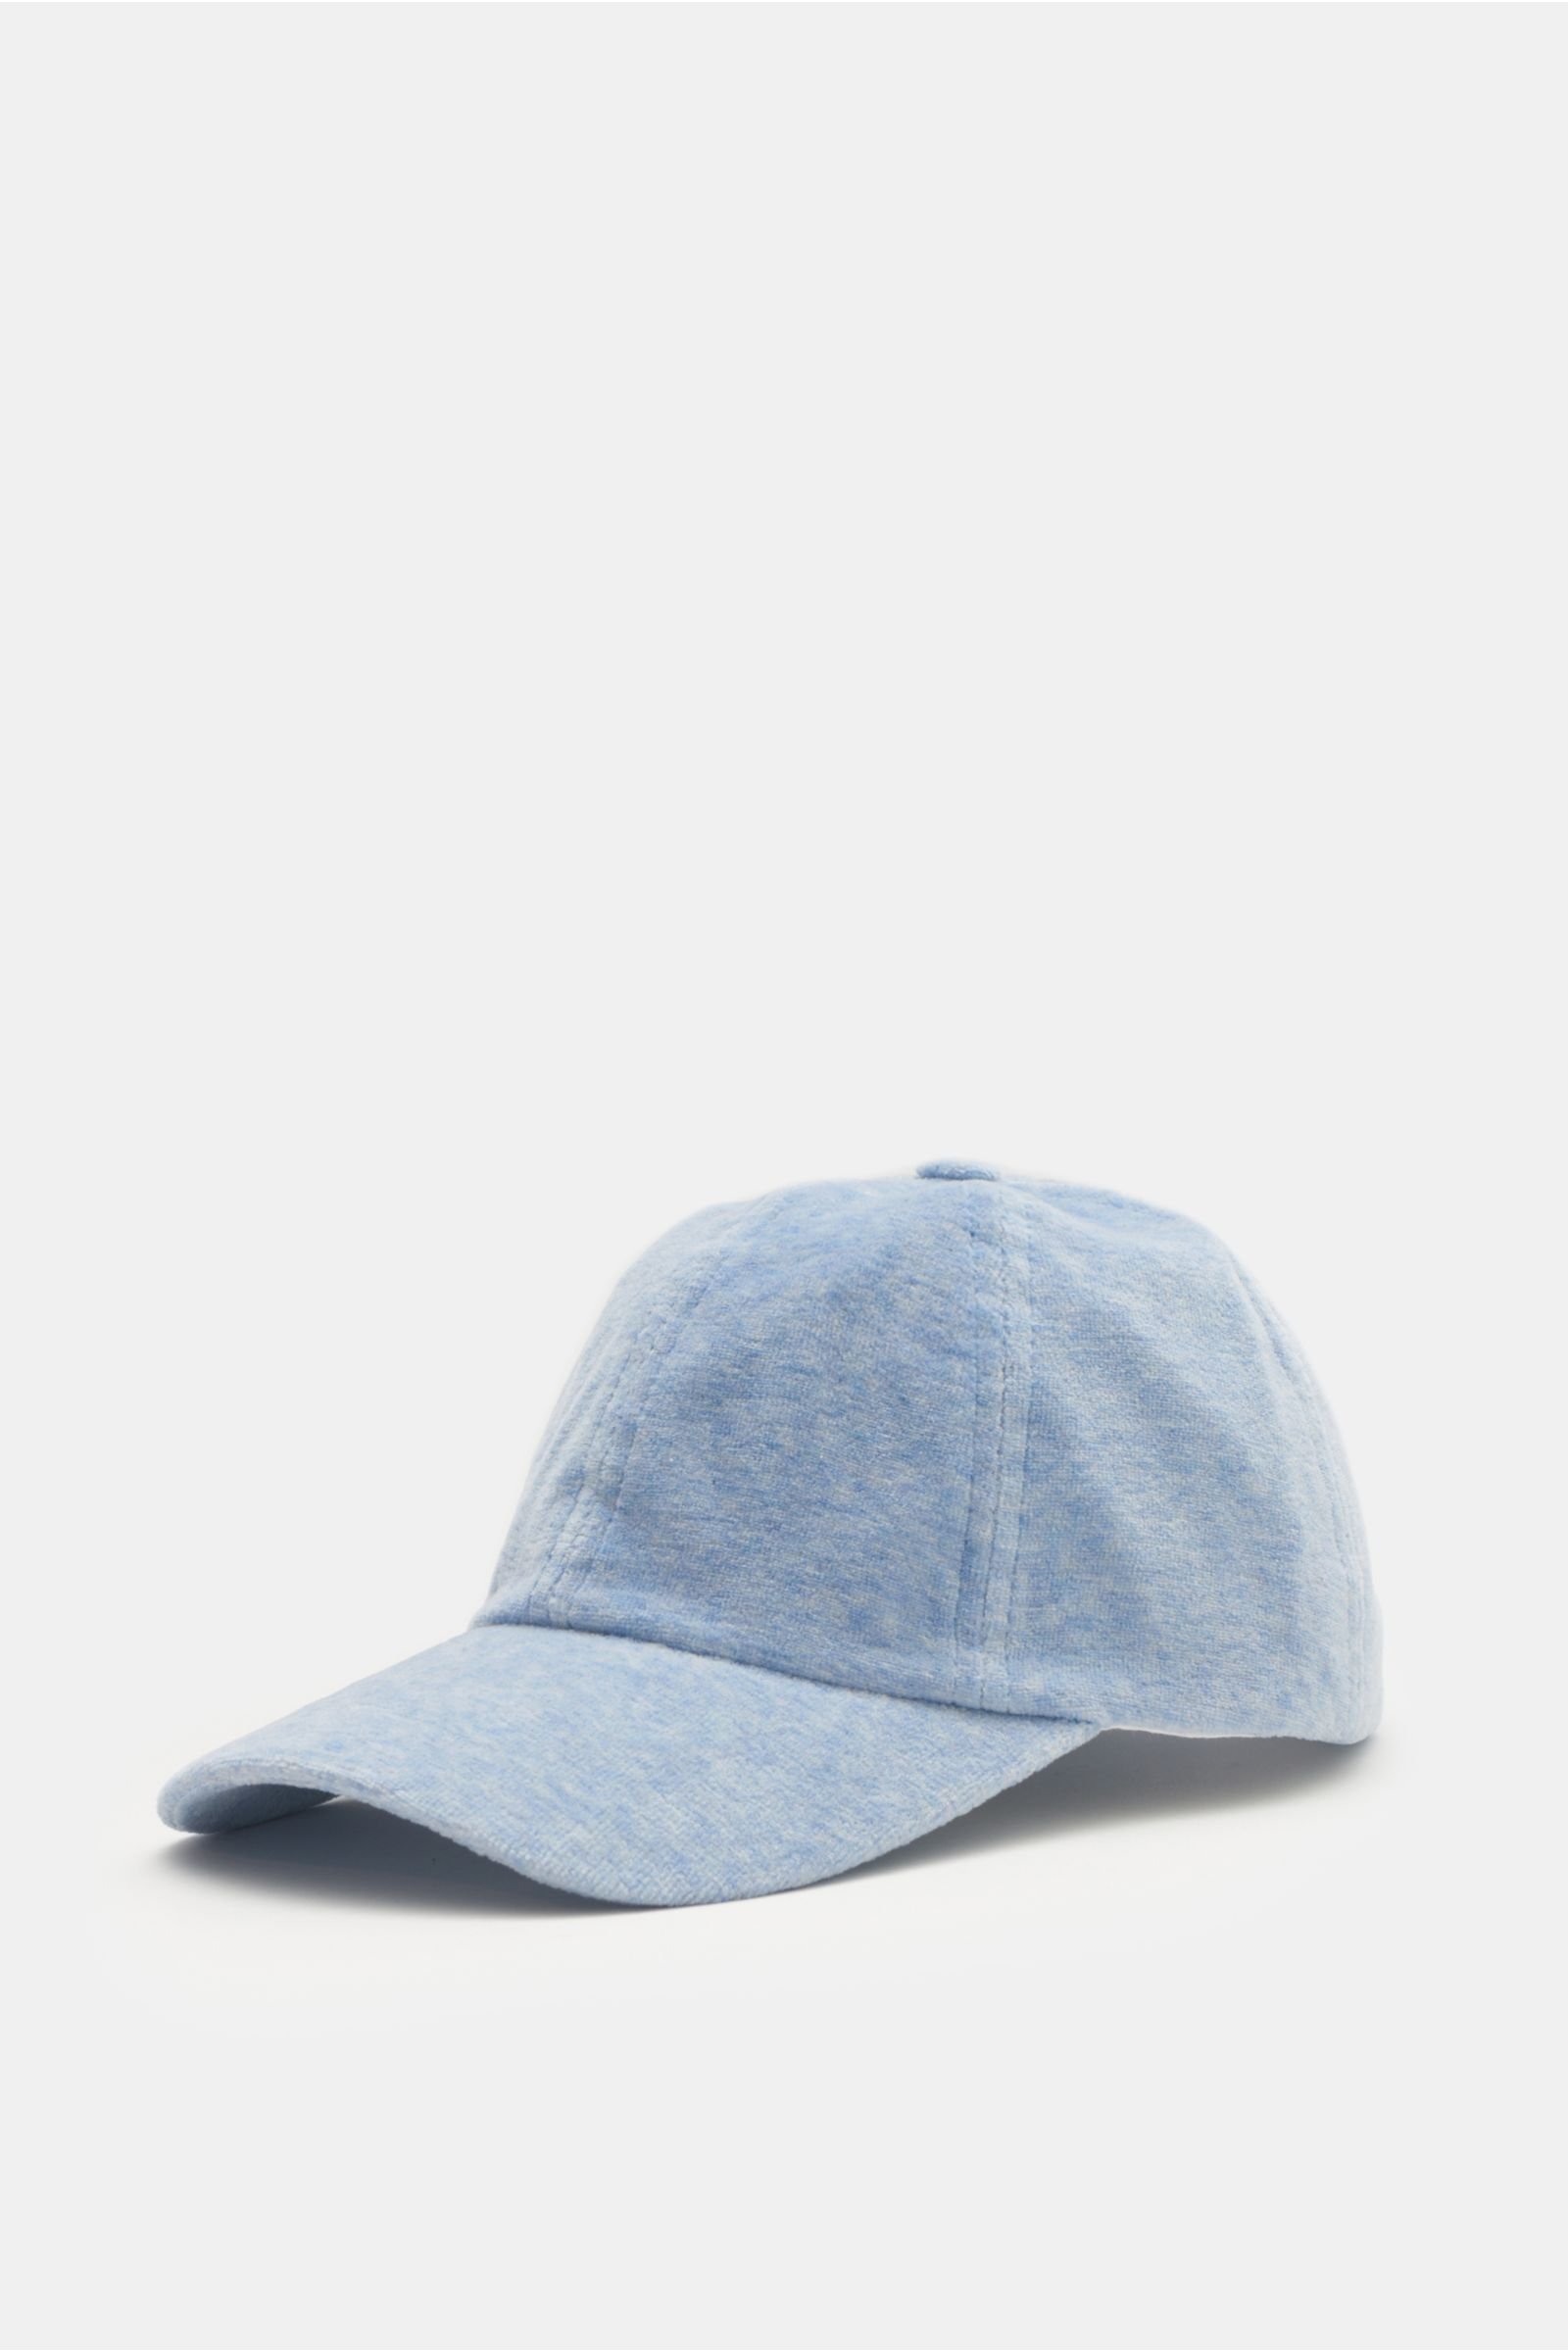 Baseball cap 'Velvet' light blue